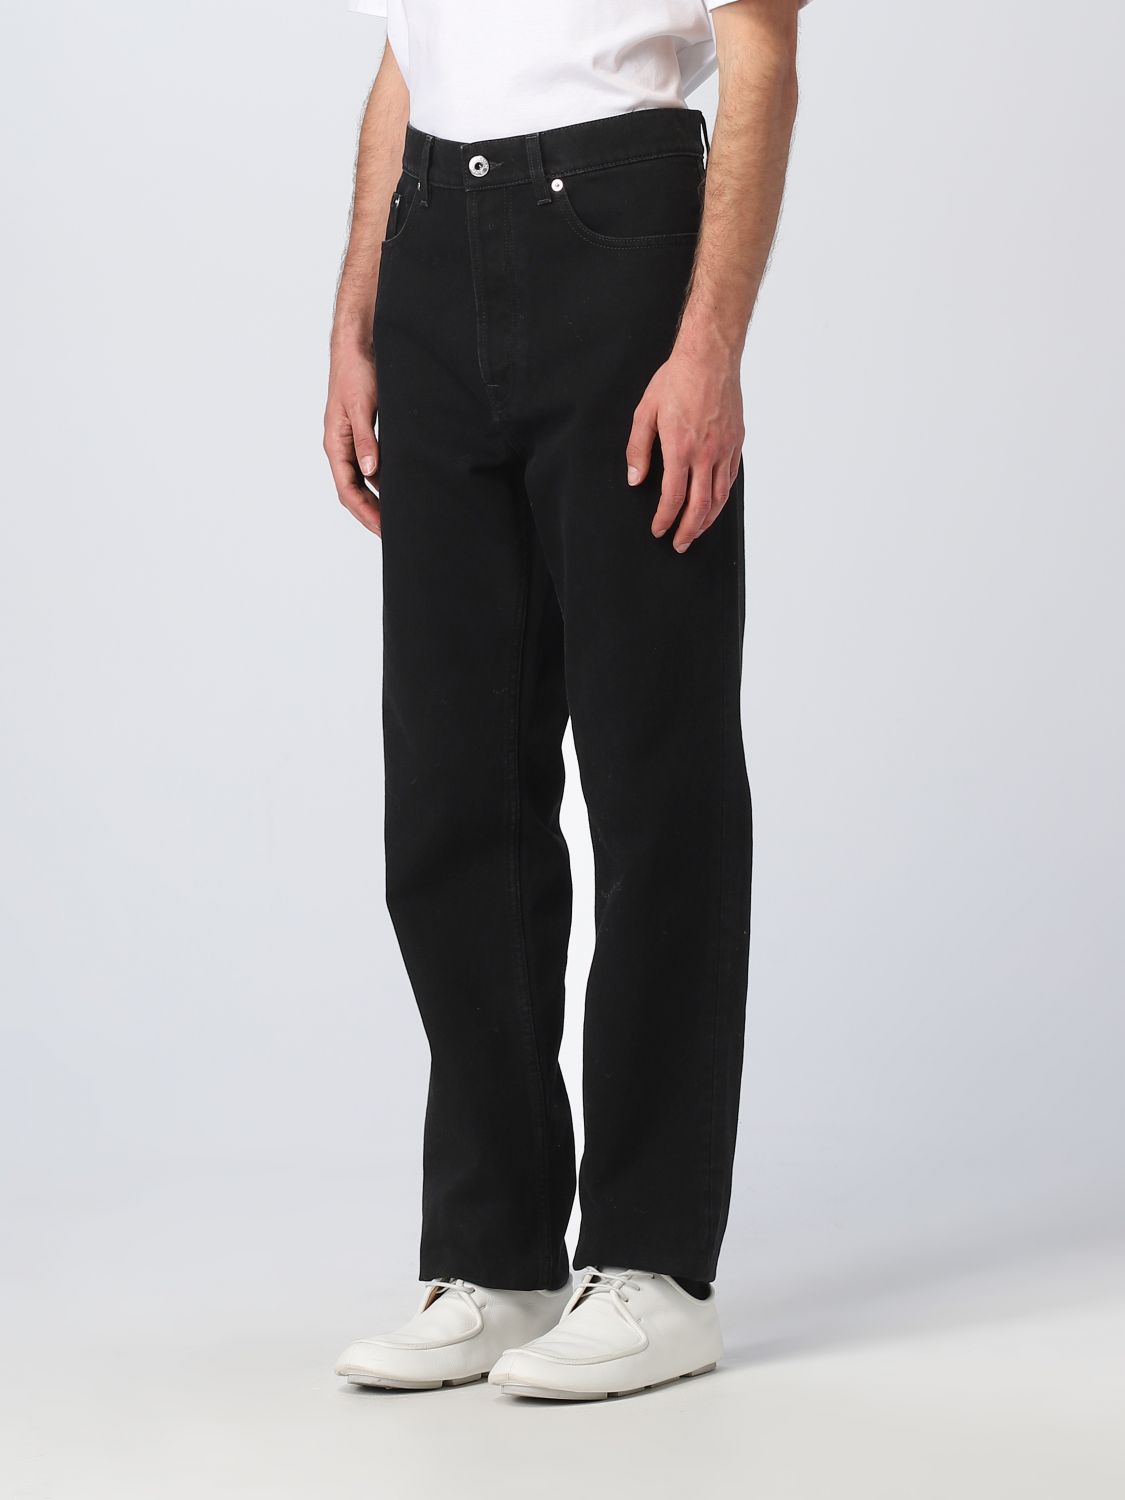 LANVIN: jeans for man - Black | Lanvin jeans RMTR0257D055P23 online on ...